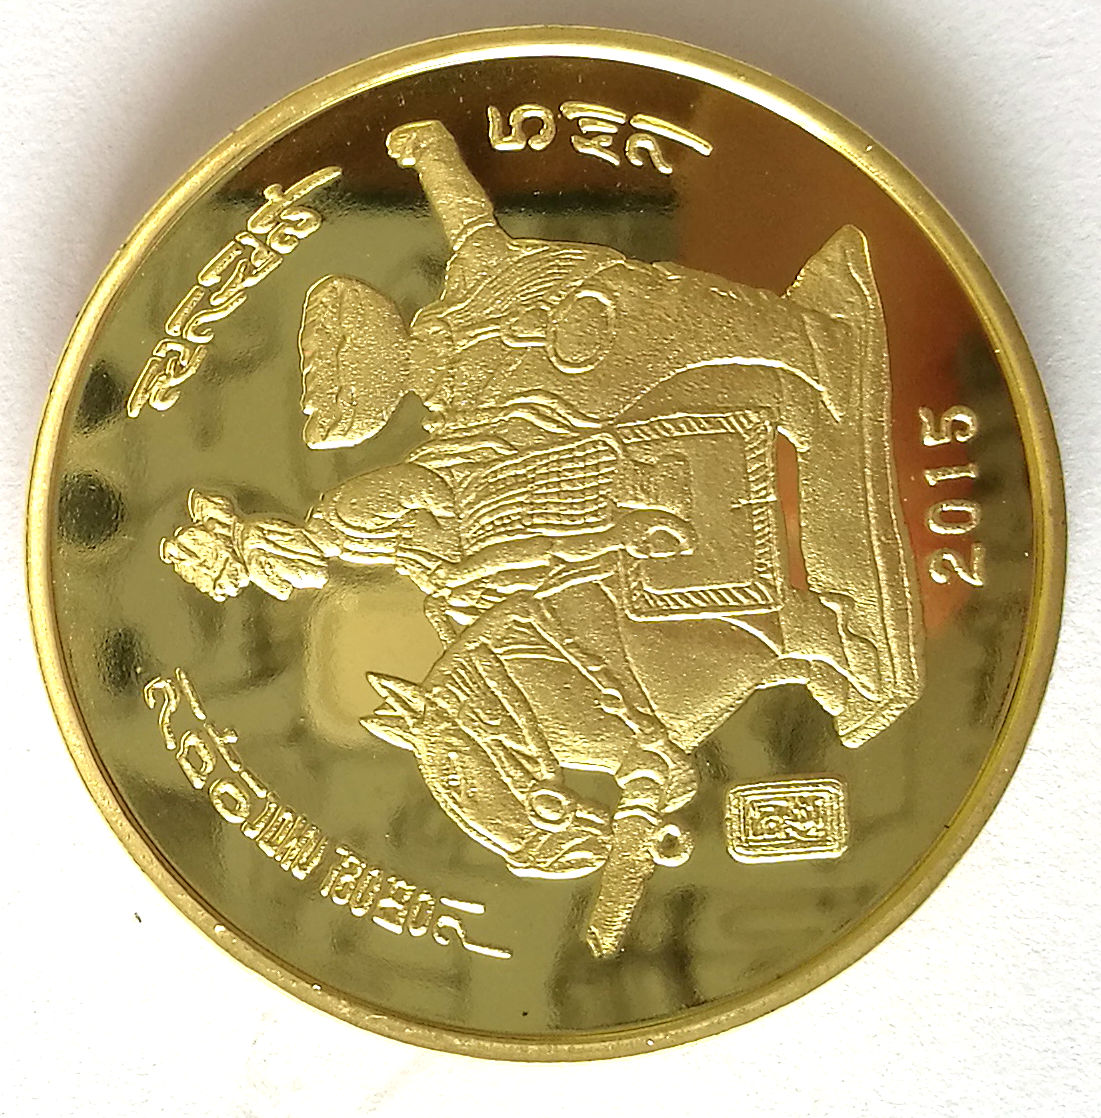 L3171, Korean "Silla Pottery" Brass Coin, Korea 2015